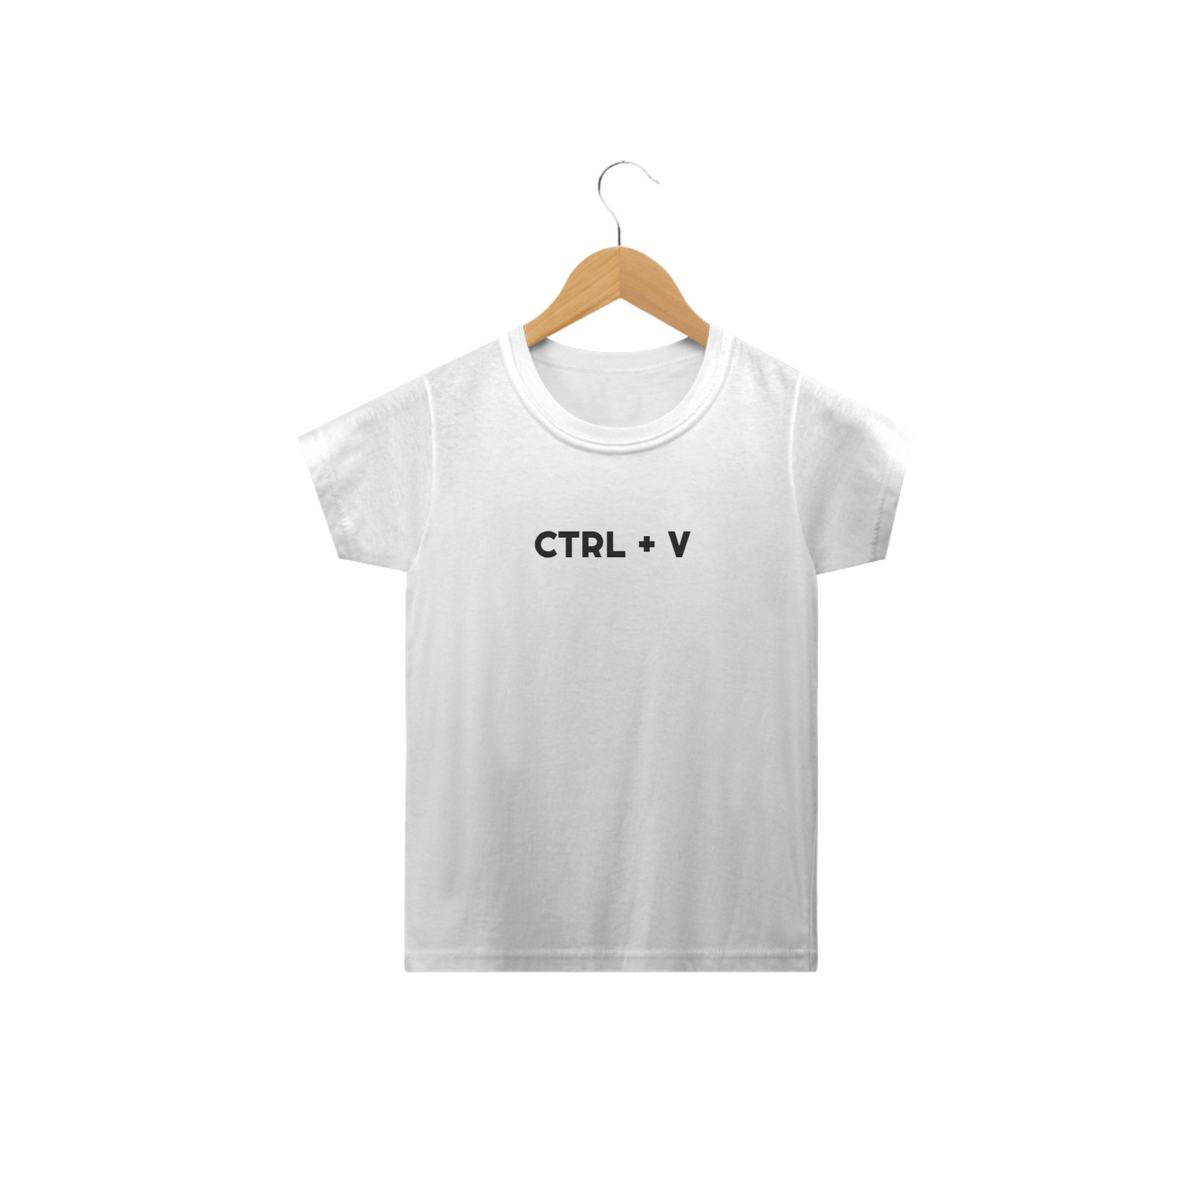 Nome do produto: Camiseta infantil CTRL + V